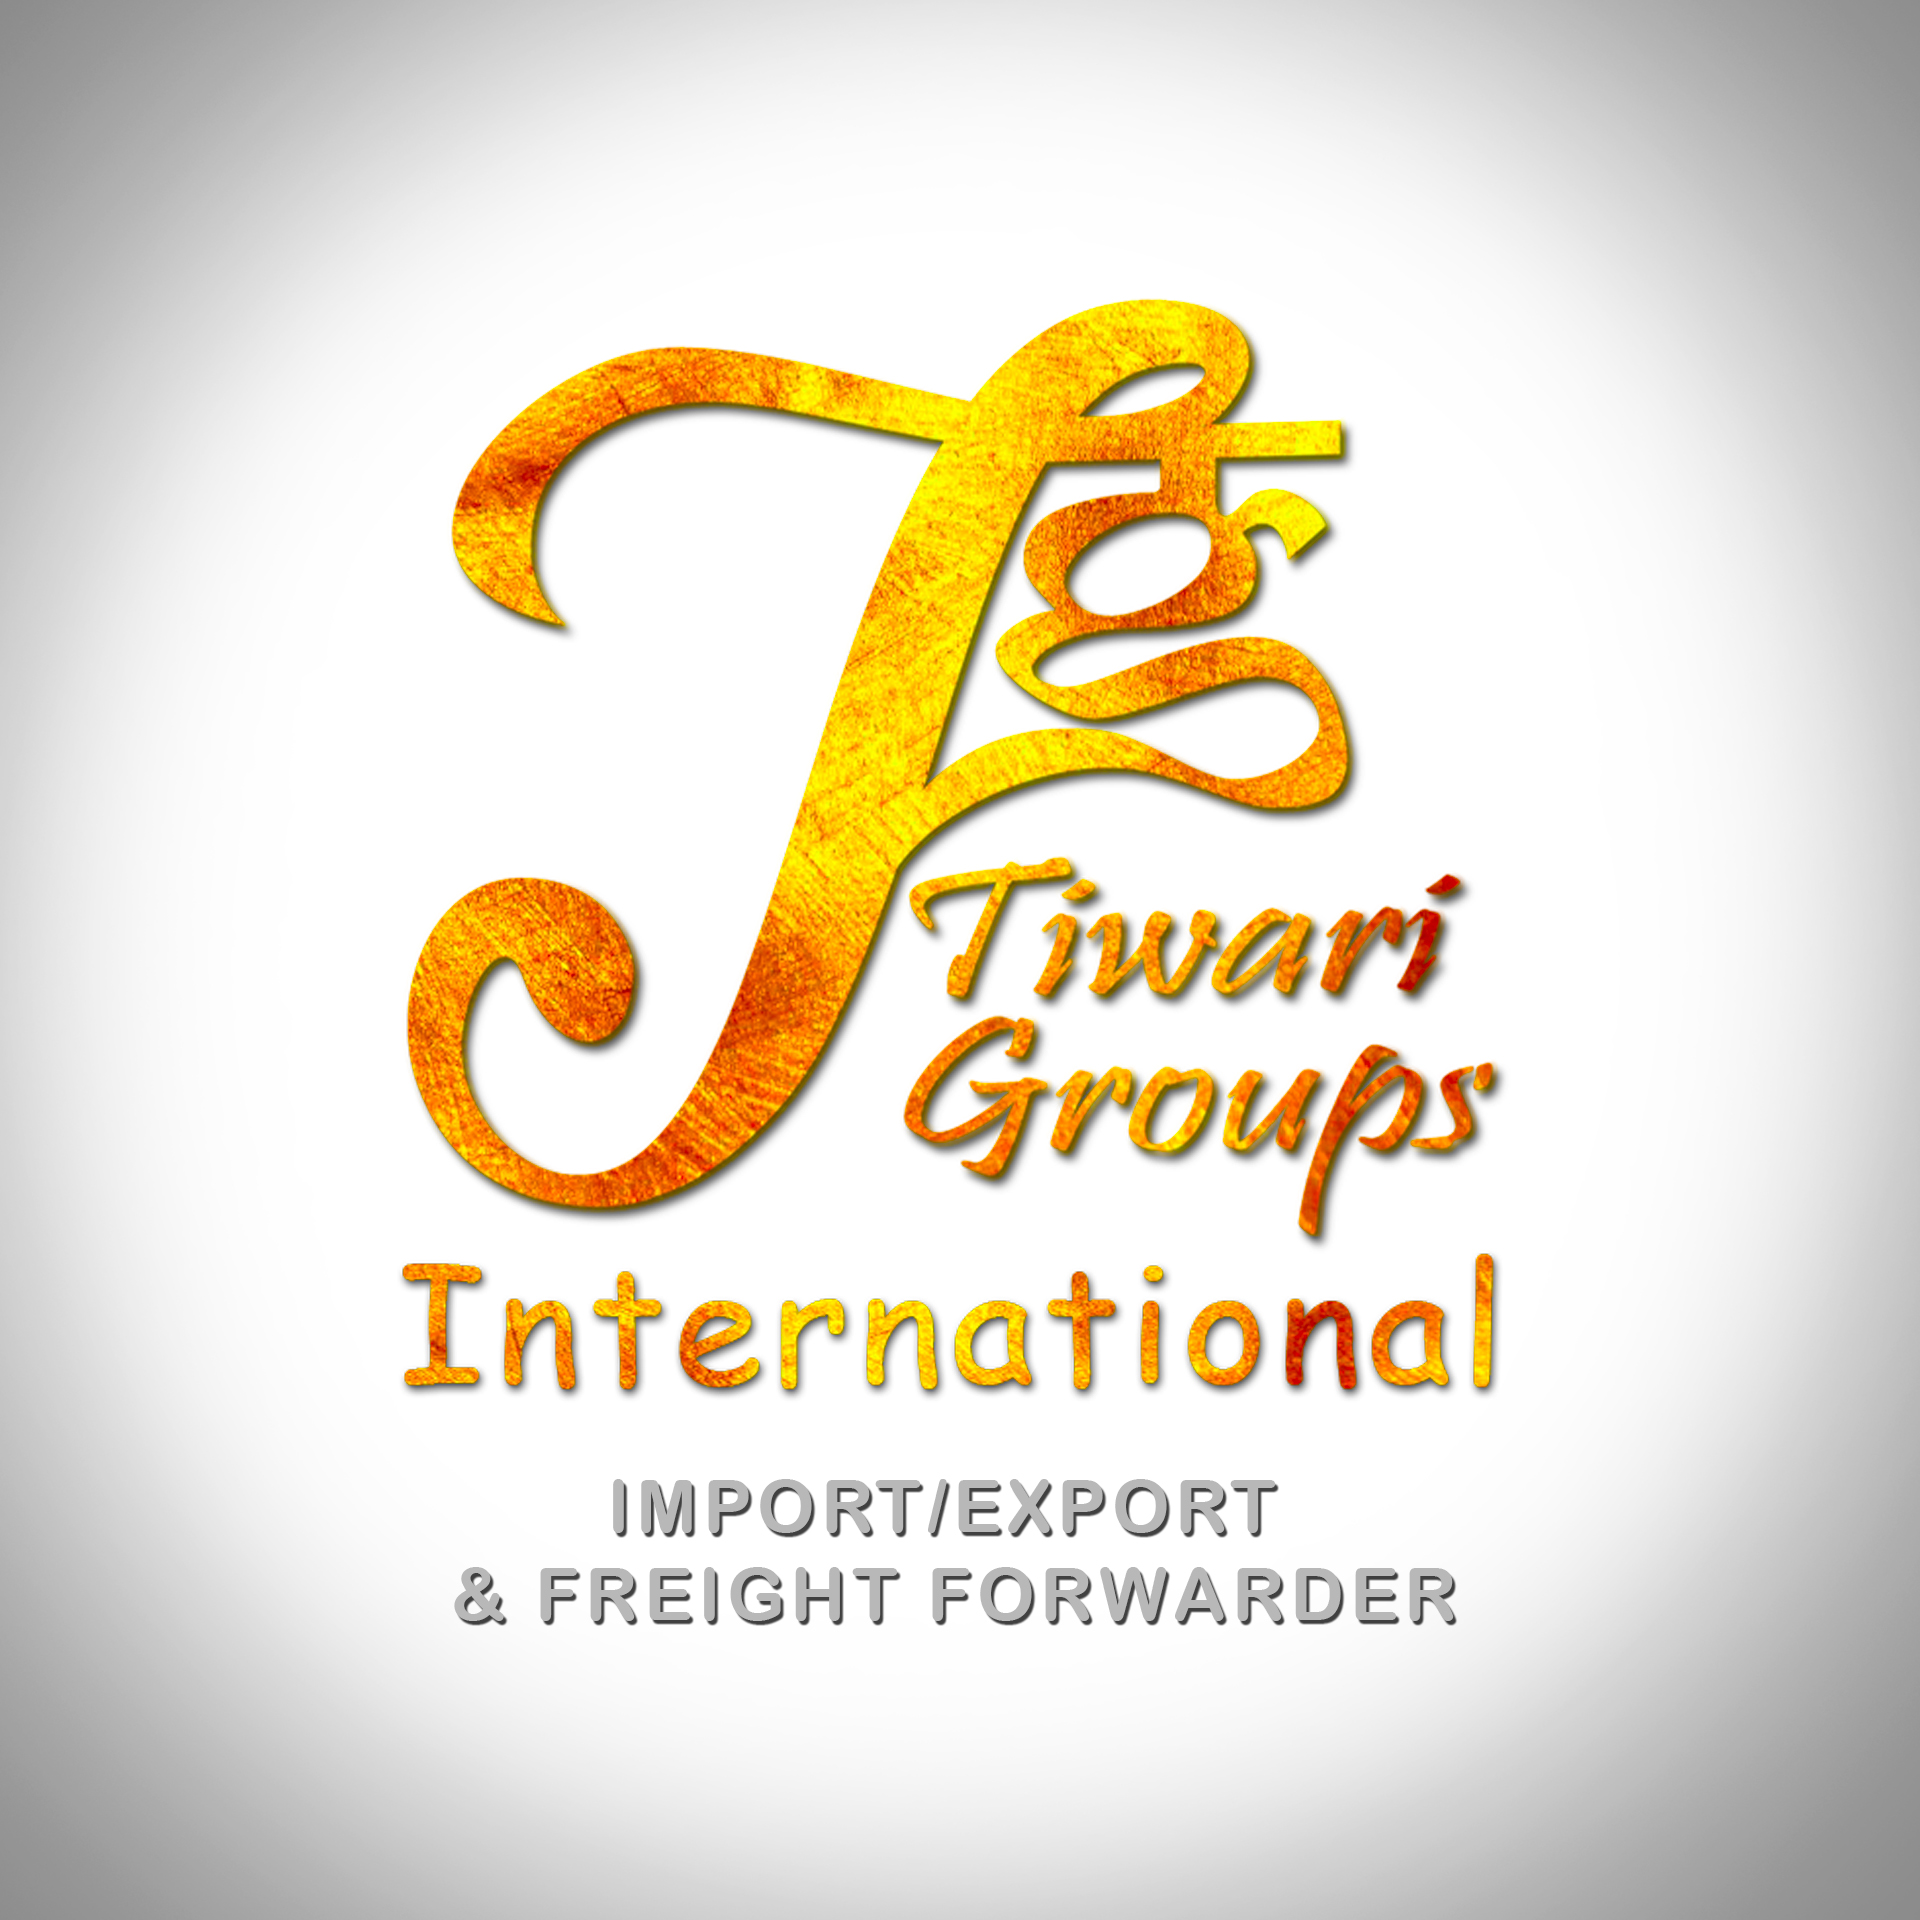 TIWARI GROUP'S INTERNATIONAL